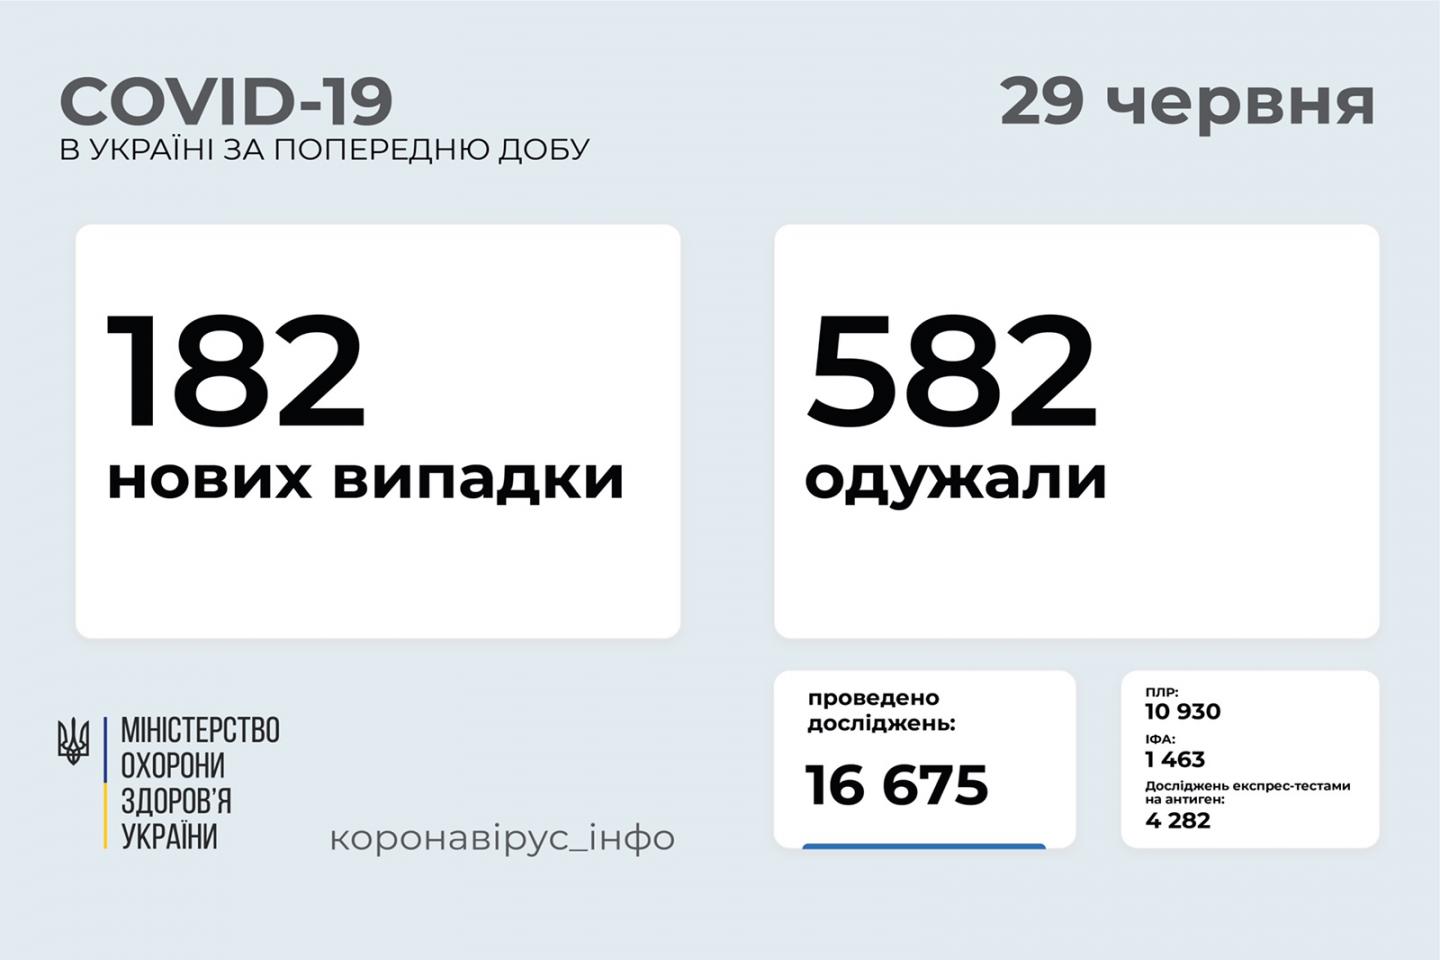 http://dunrada.gov.ua/uploadfile/archive_news/2021/06/29/2021-06-29_1687/images/images-31867.jpg